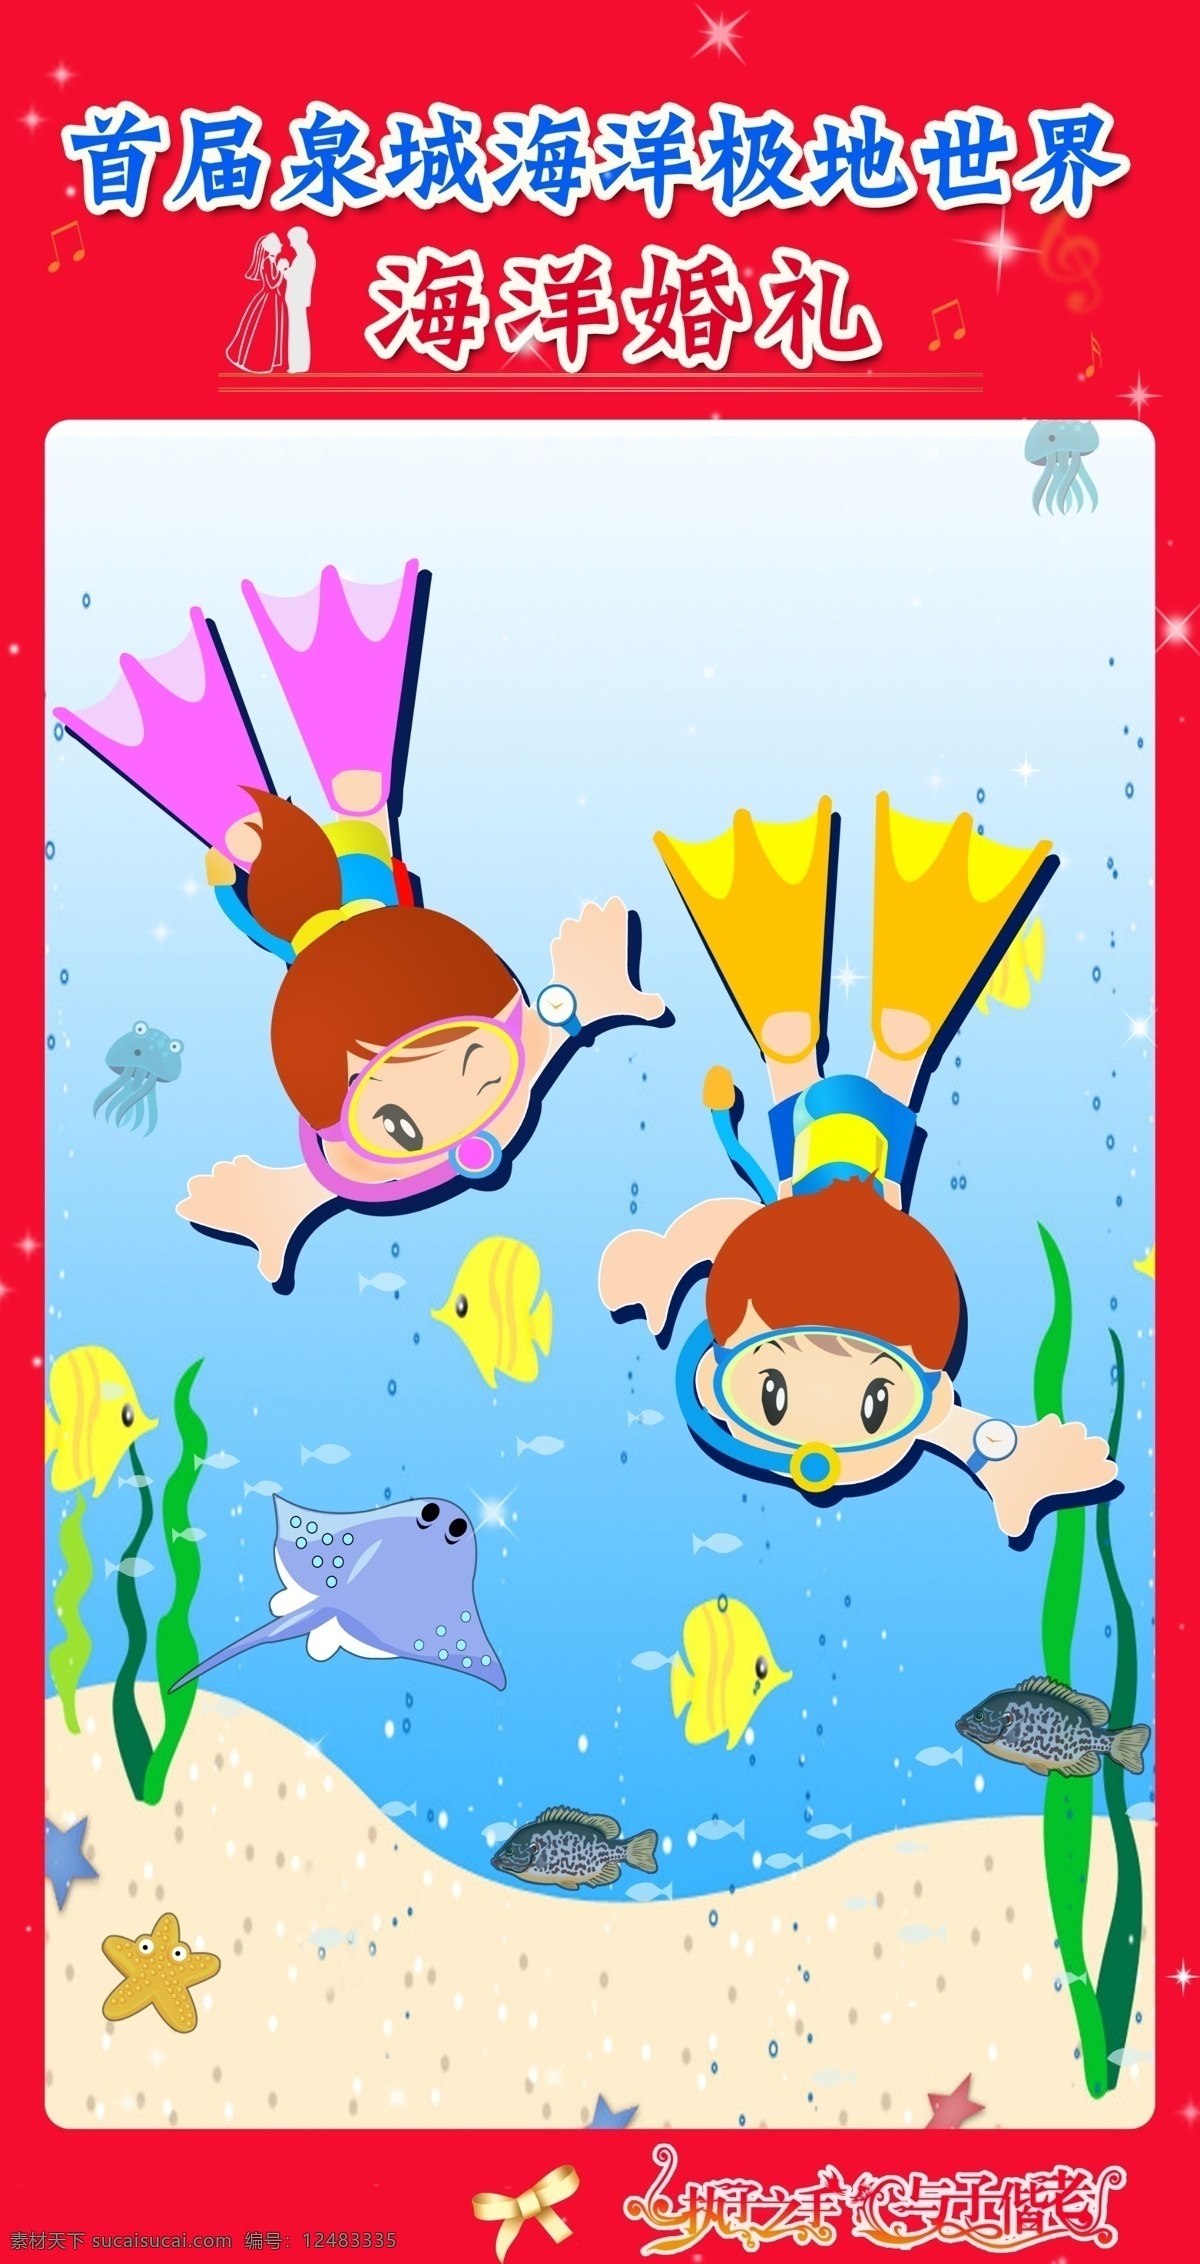 海洋婚礼海报 展板设计 源文件 海洋婚礼 卡通海洋 卡通鱼 卡通潜水娃娃 卡通 广告设计模板